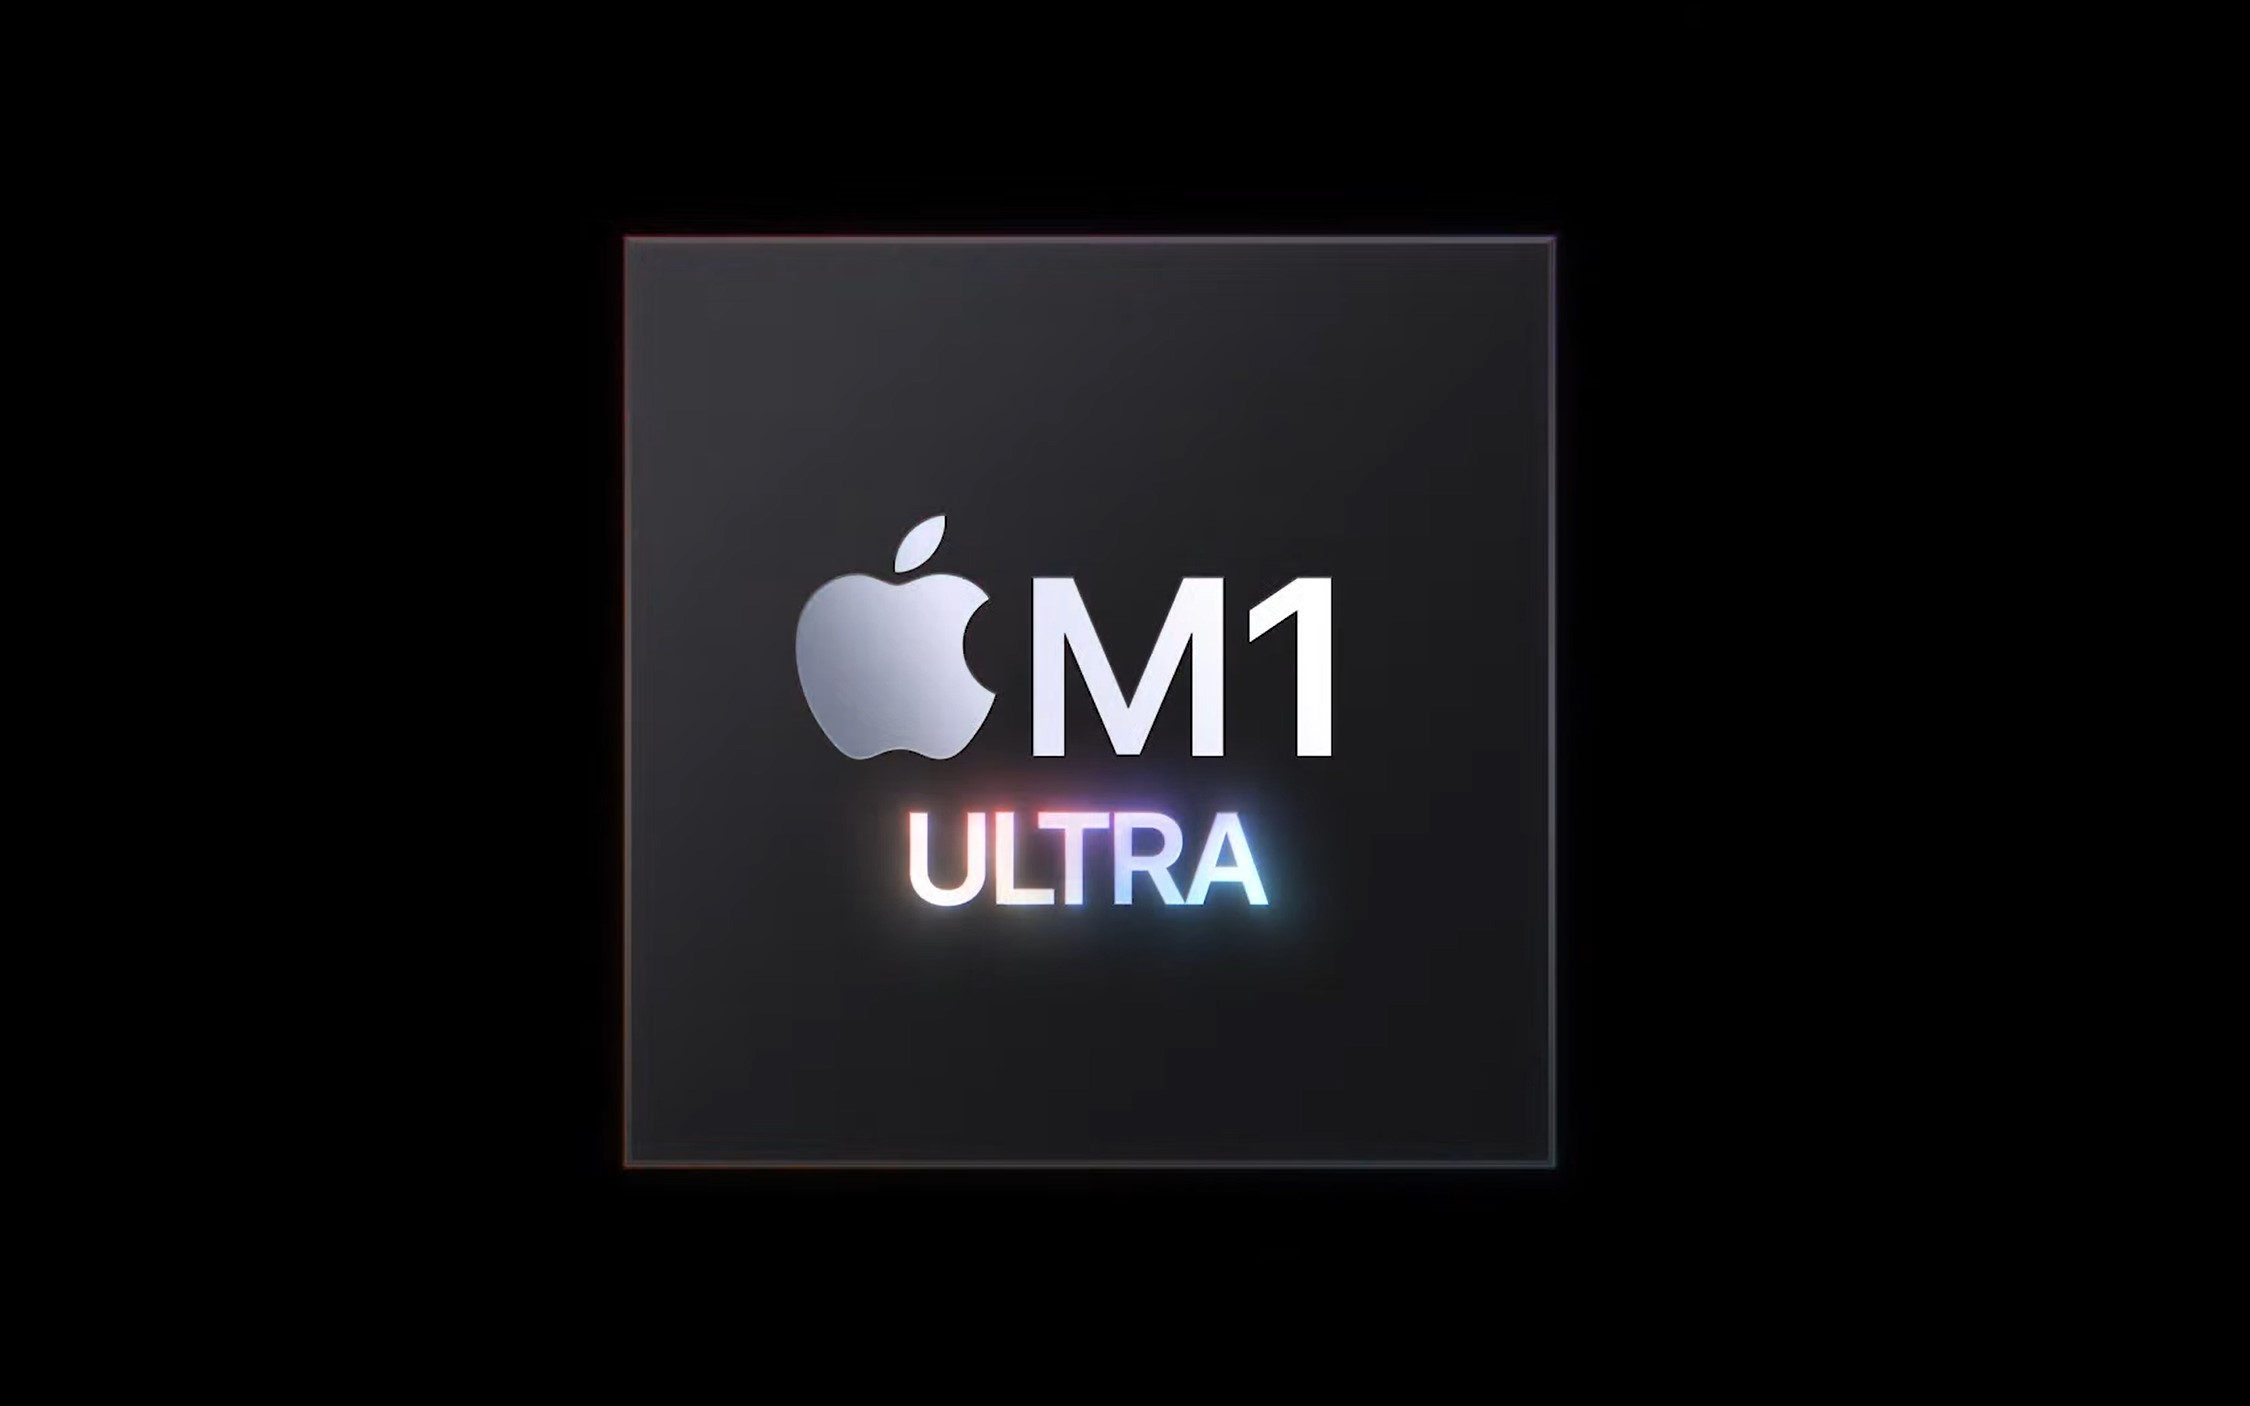 procesor Apple M1 Ultra processor